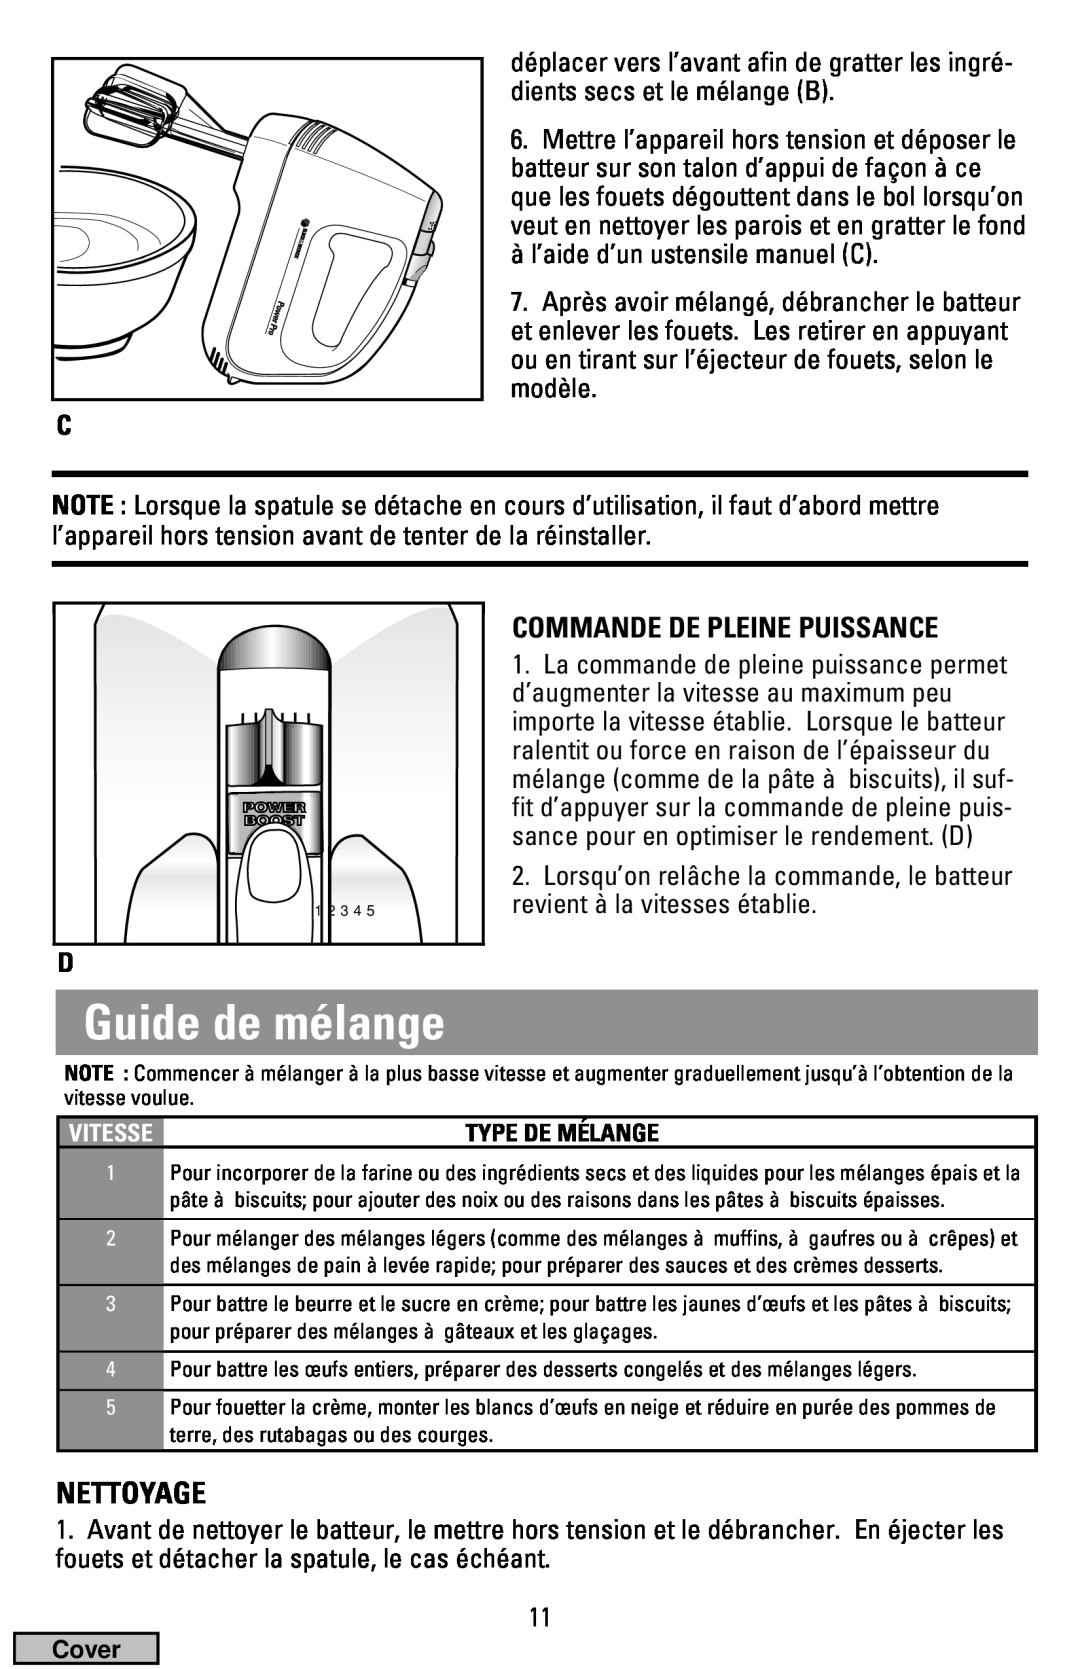 Black & Decker MX50, MX70 manual Guide de mélange, Nettoyage, Commande De Pleine Puissance 